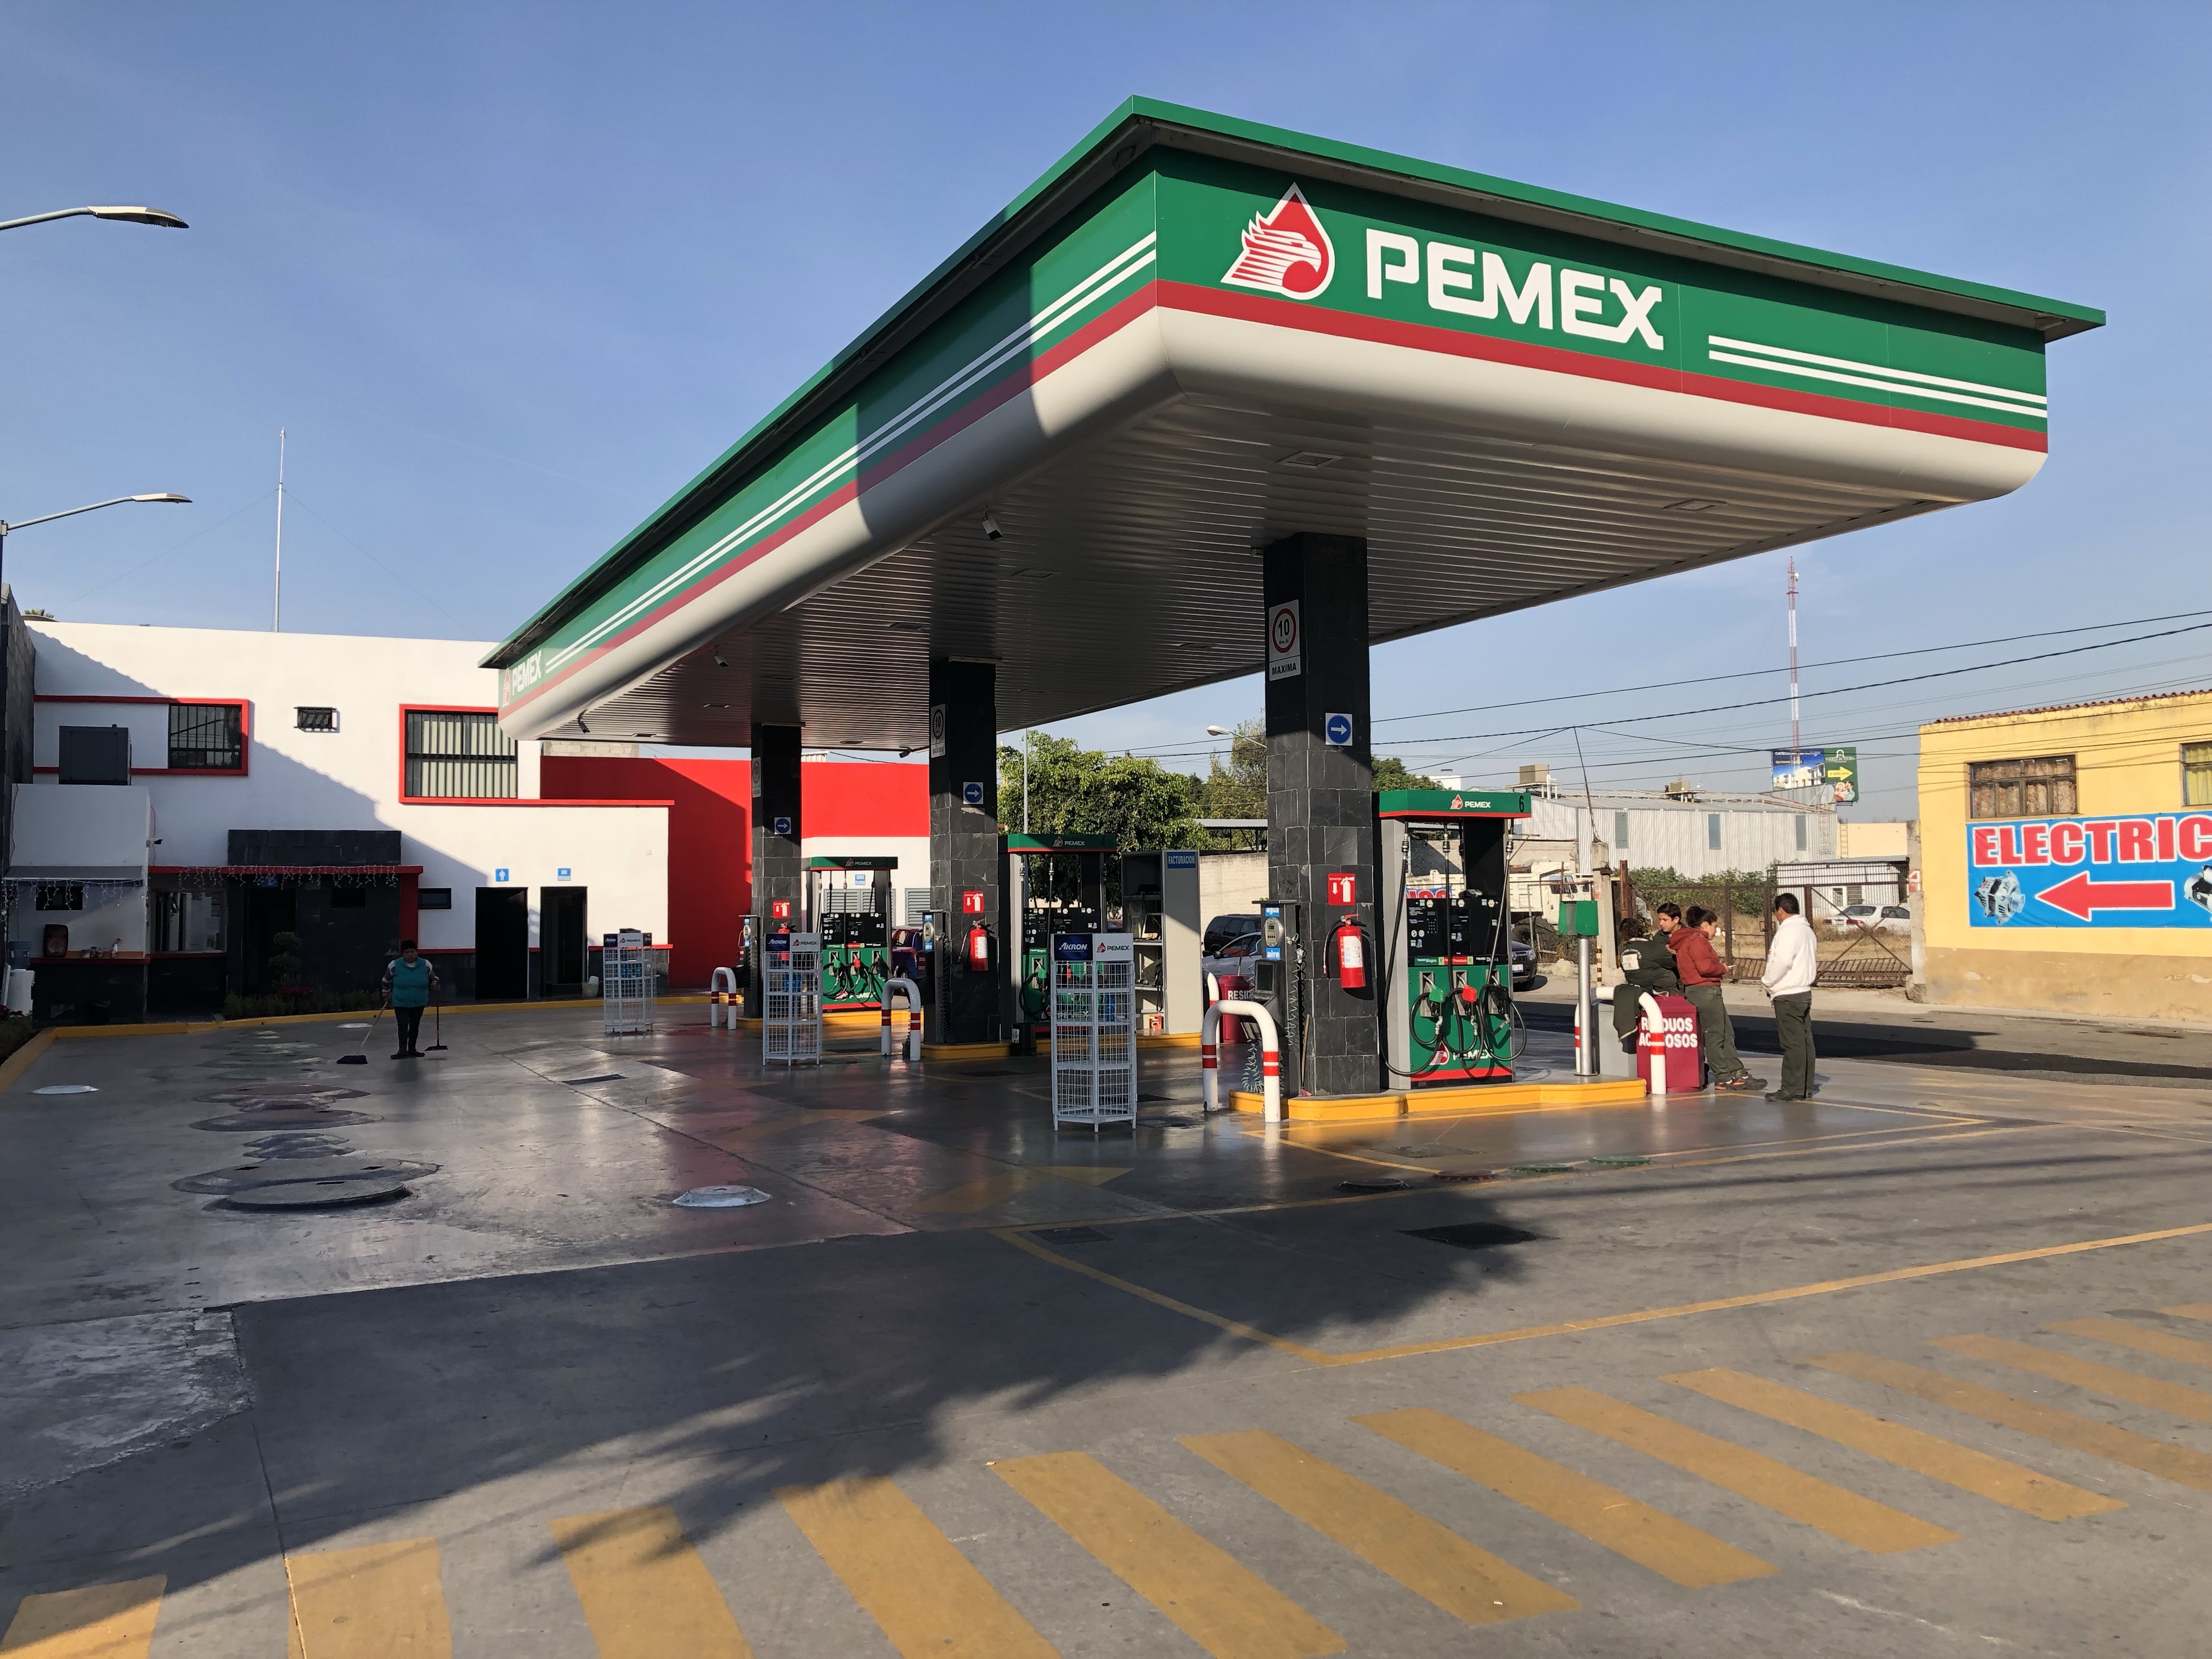  Al menos seis gasolineras serán afectadas por la obra de 5 de Febrero